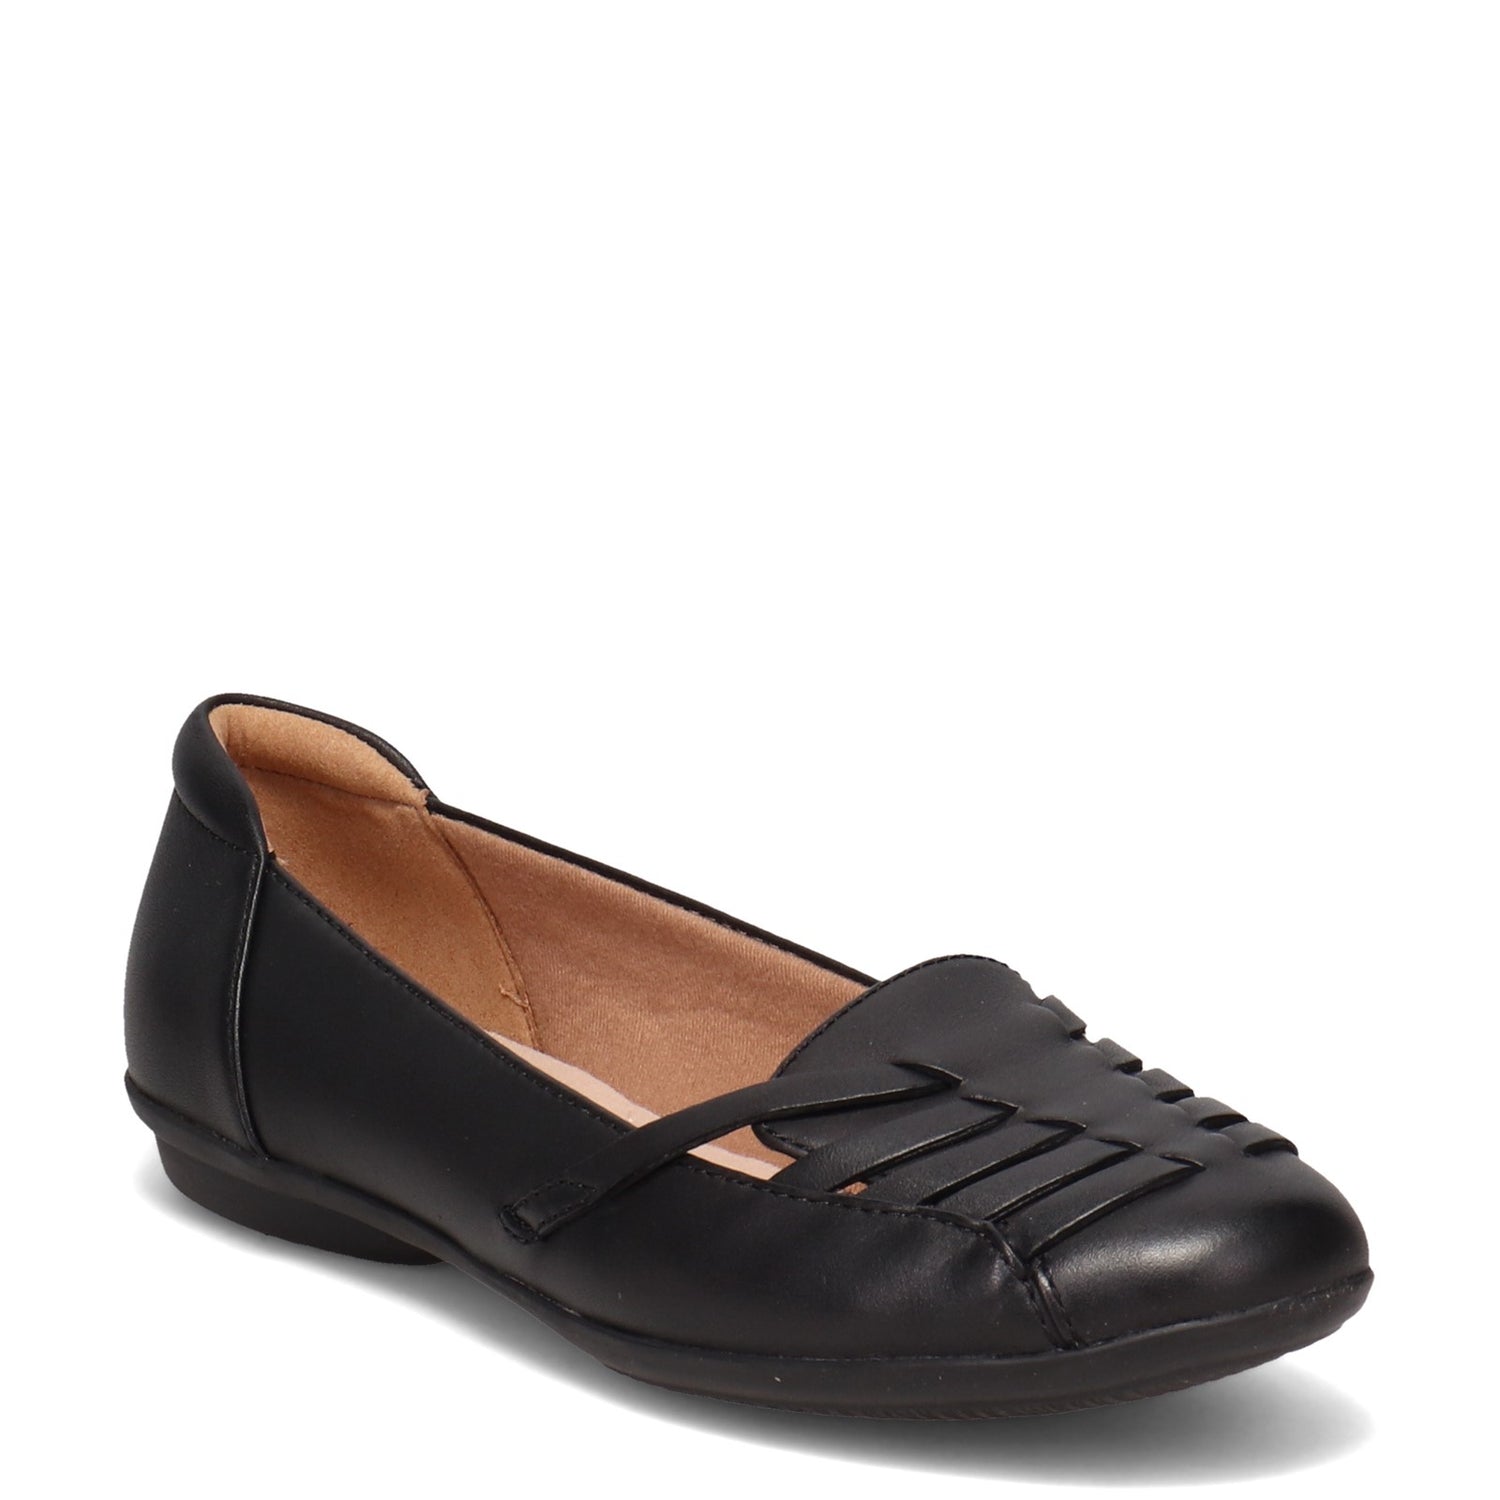 Peltz Shoes  Women's Clarks Gracelin Gemma Flat BLACK 26125289